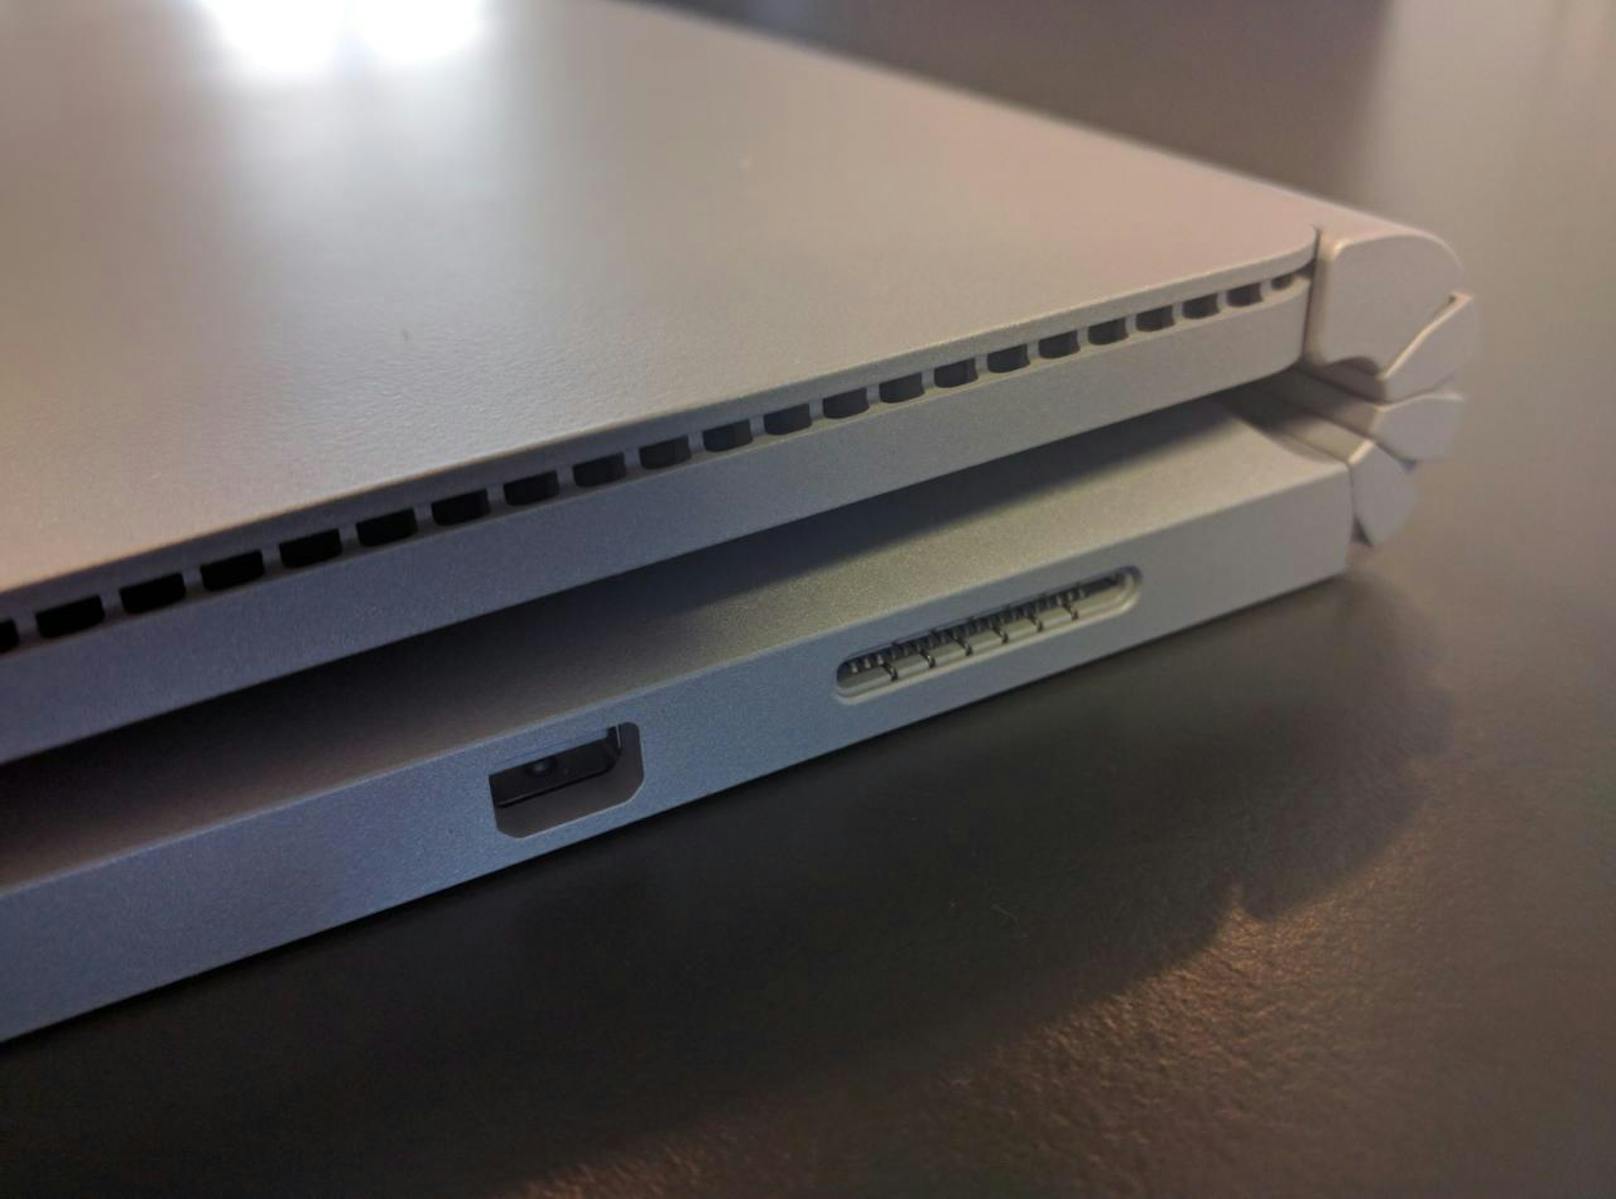 Bei den Anschlüssen bietet das Surface Book zwei USB 3.0-Buchsen, einen SD-Kartenleser, Surface Connect, Kopfhörerbuchse und Mini-Display-Port. Weitere Anschlüsse (USB-C, Thunderbolt 3) wären wünschenswert gewesen.